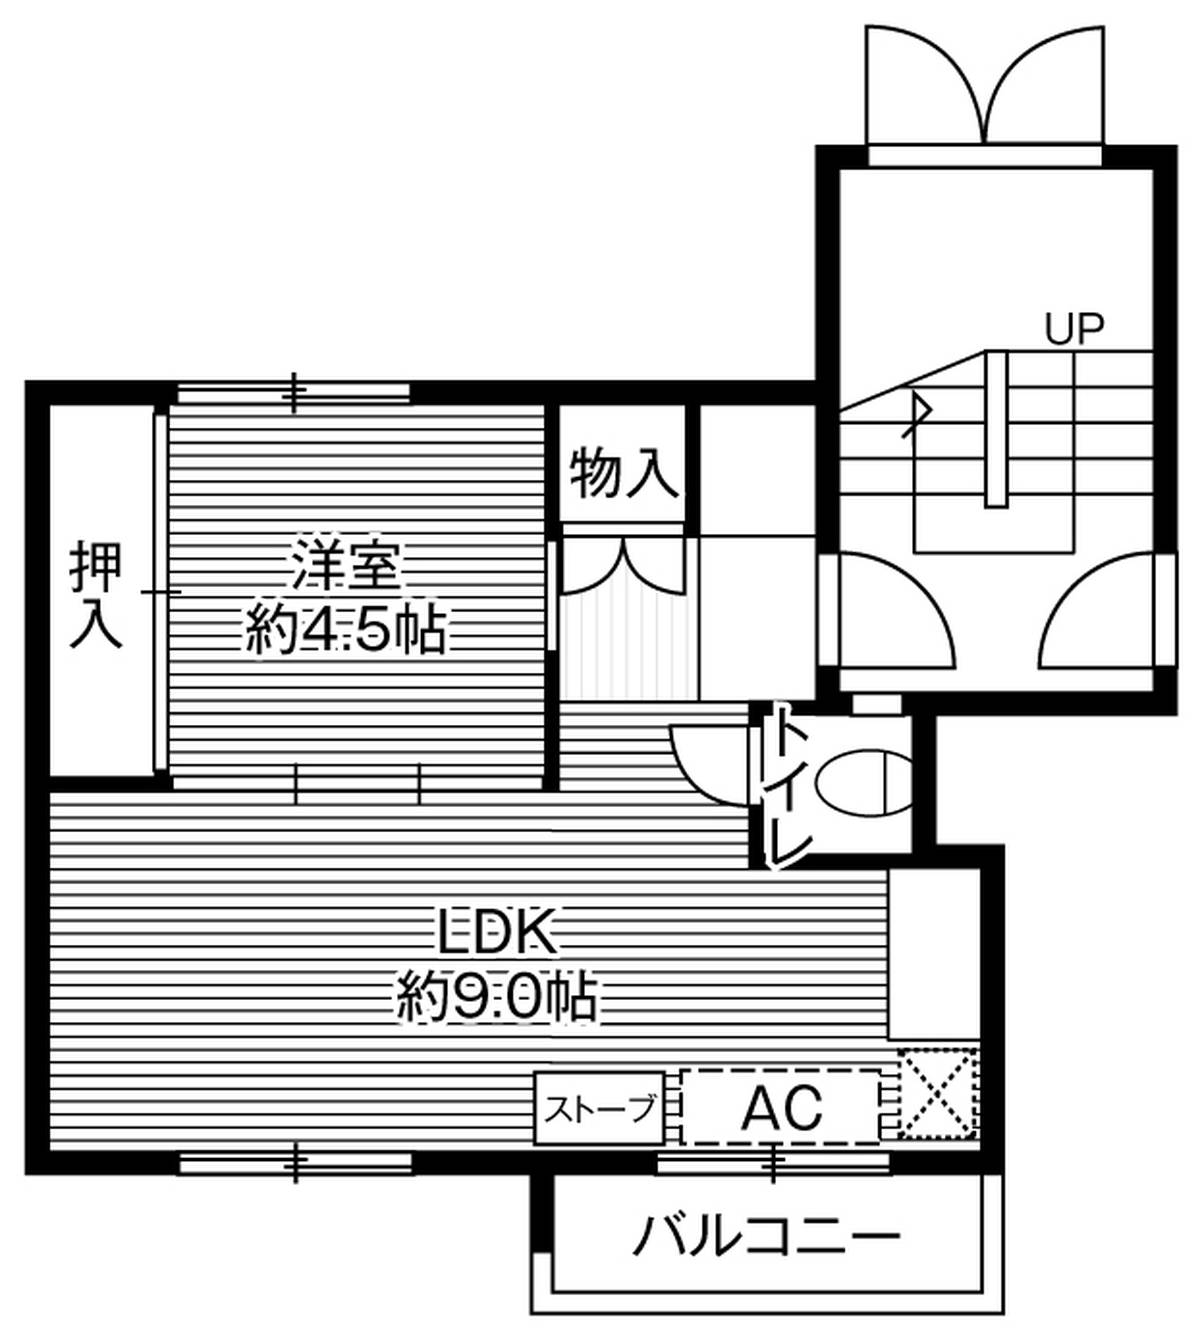 2K floorplan of Village House Teine in Nishi-ku